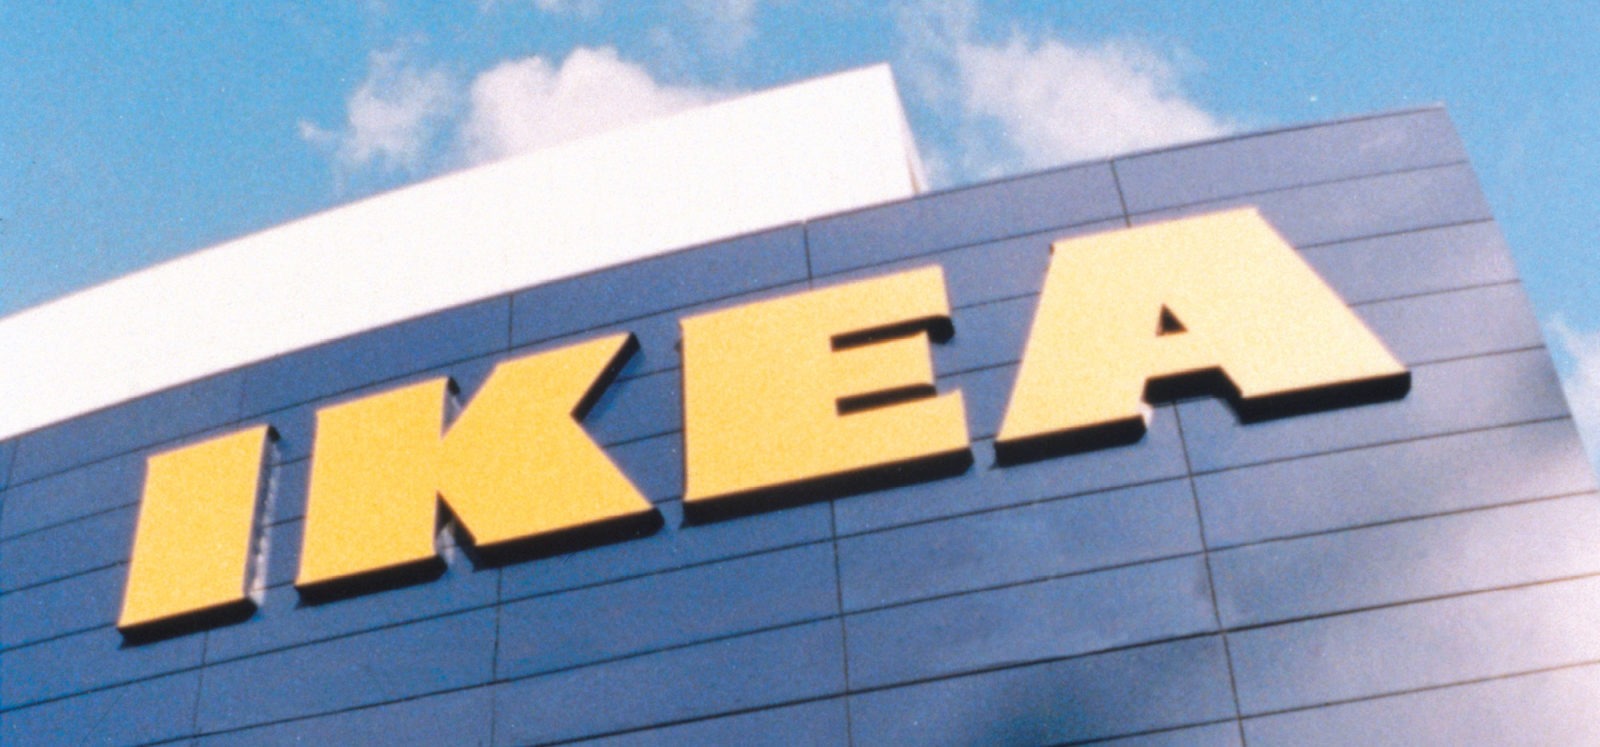 Blå IKEA varuhusfasad mot ljusblå himmel. Gigantiska gula bokstäver på fasaden bildar ordet IKEA.